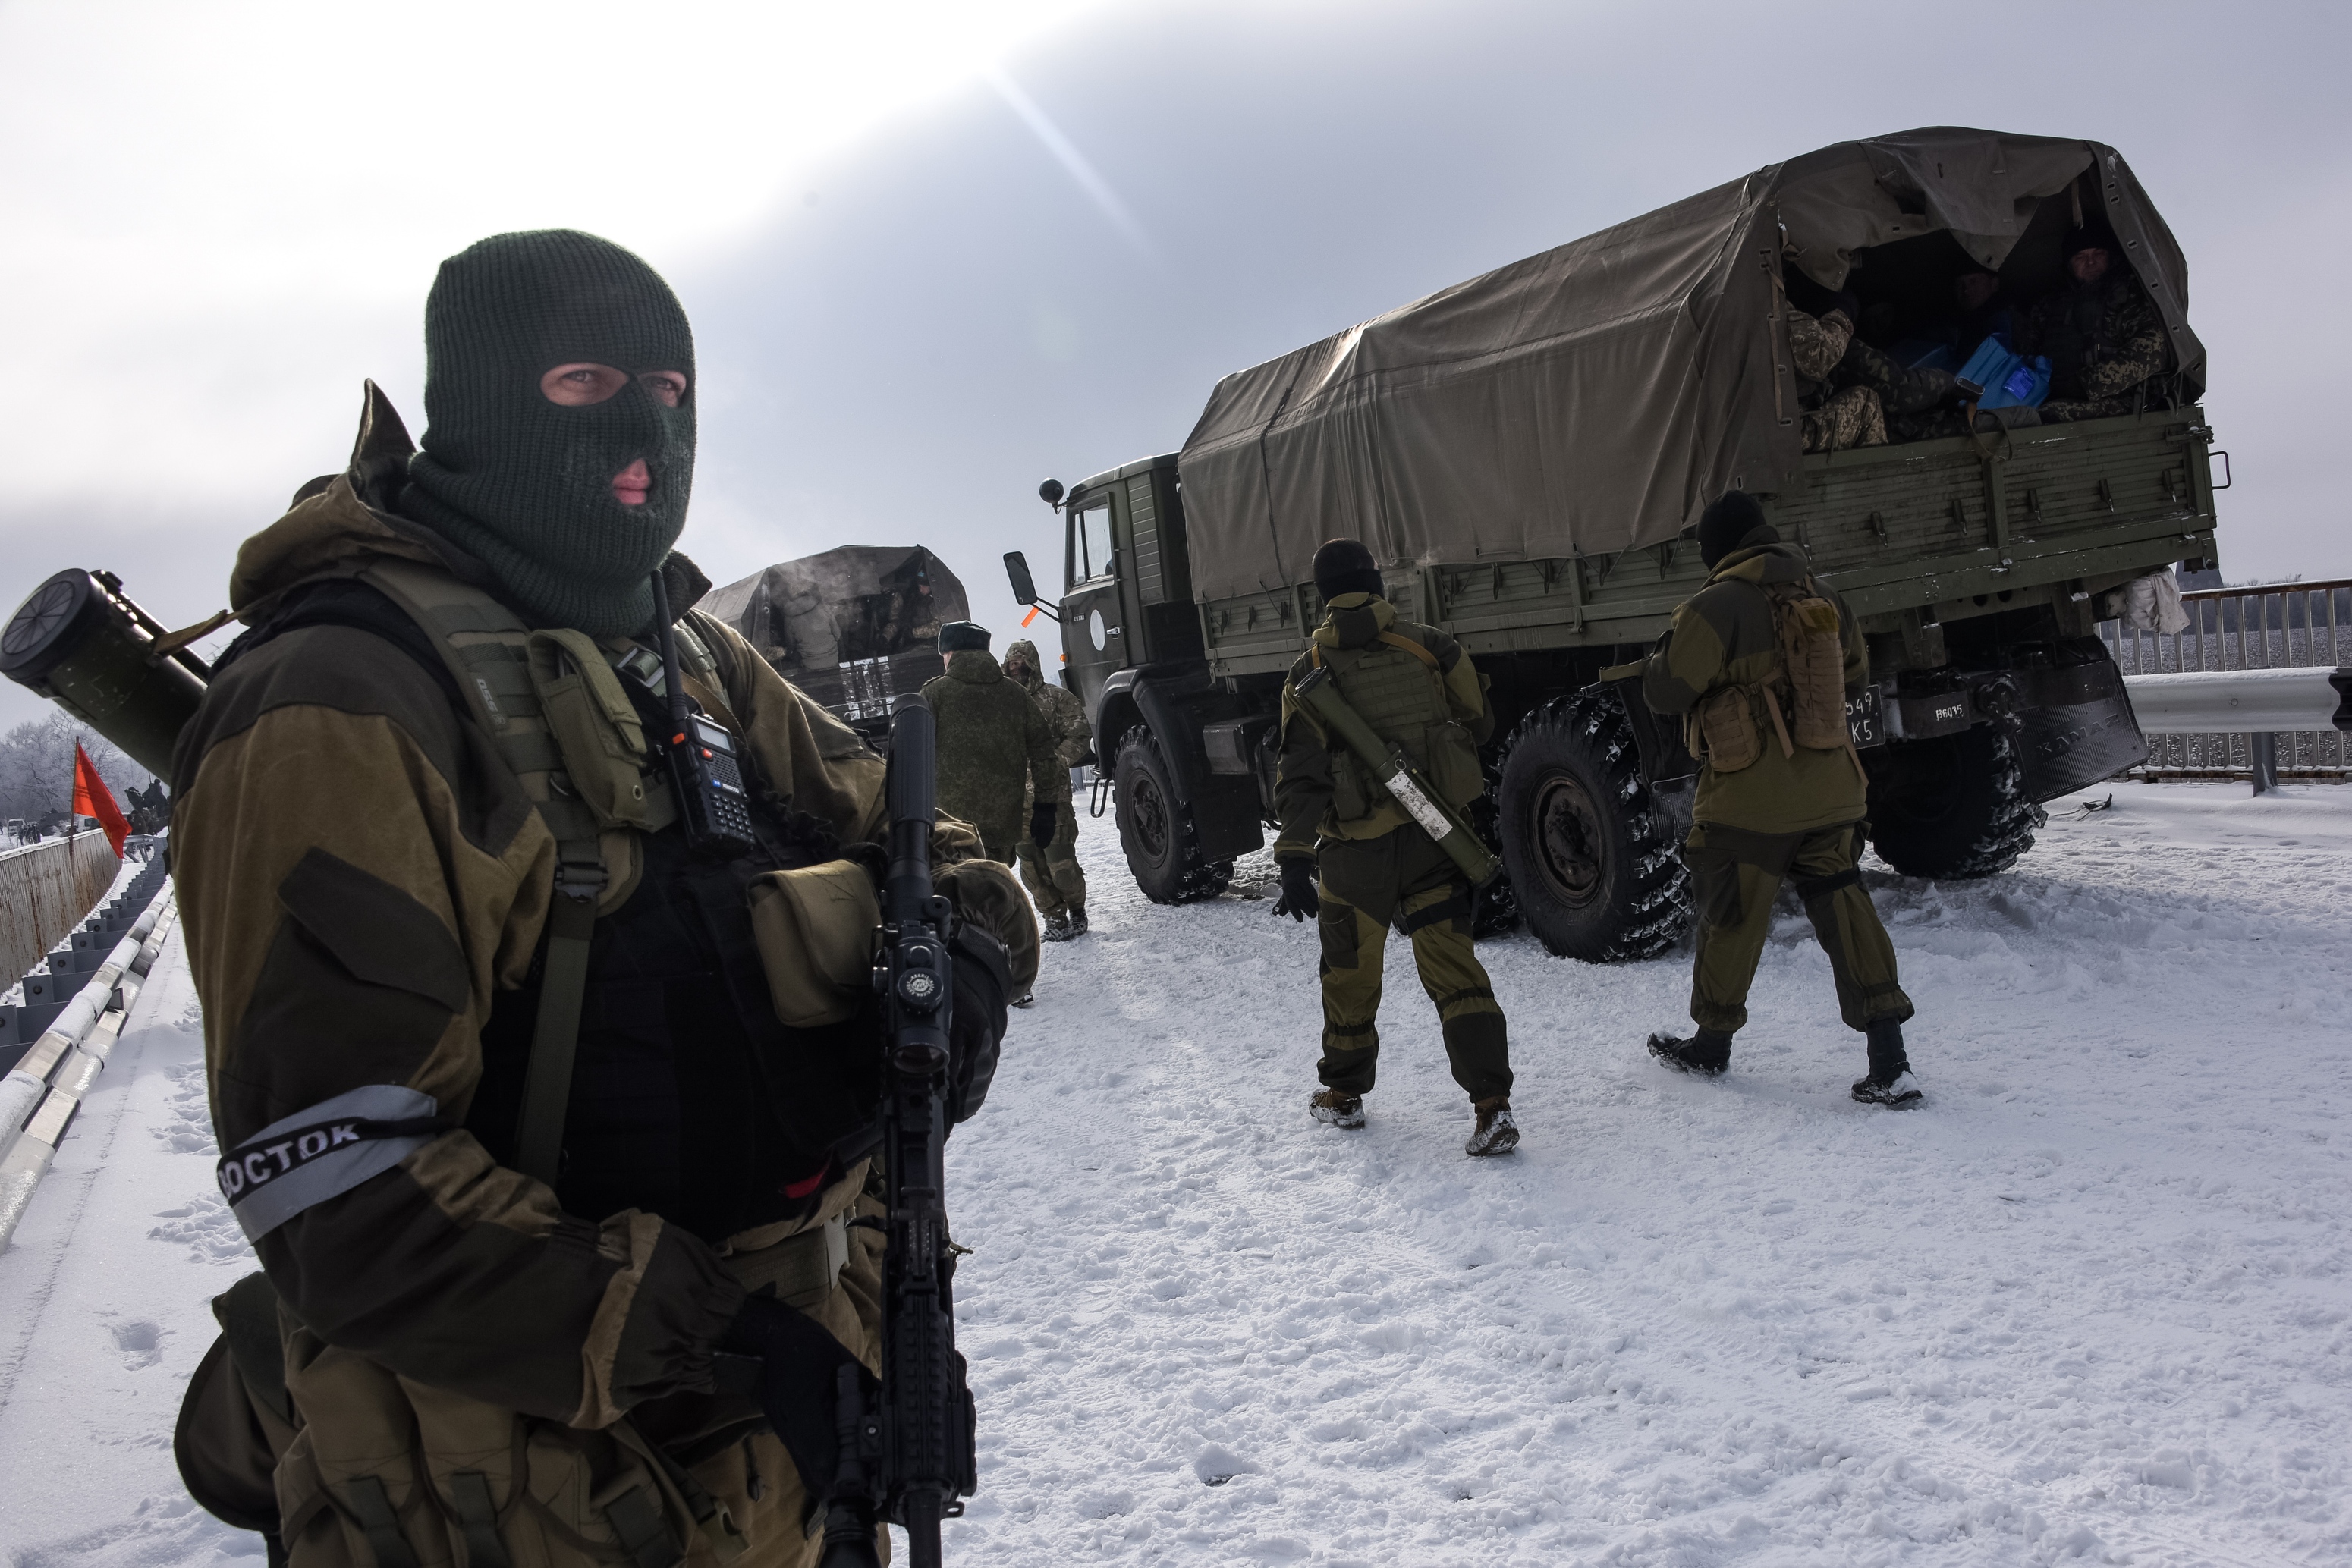 Донецк, Дебальцево и Горловку готовят к эвакуации гражданского населения: Тымчук рассказал о тревожной обстановке в стане боевиков